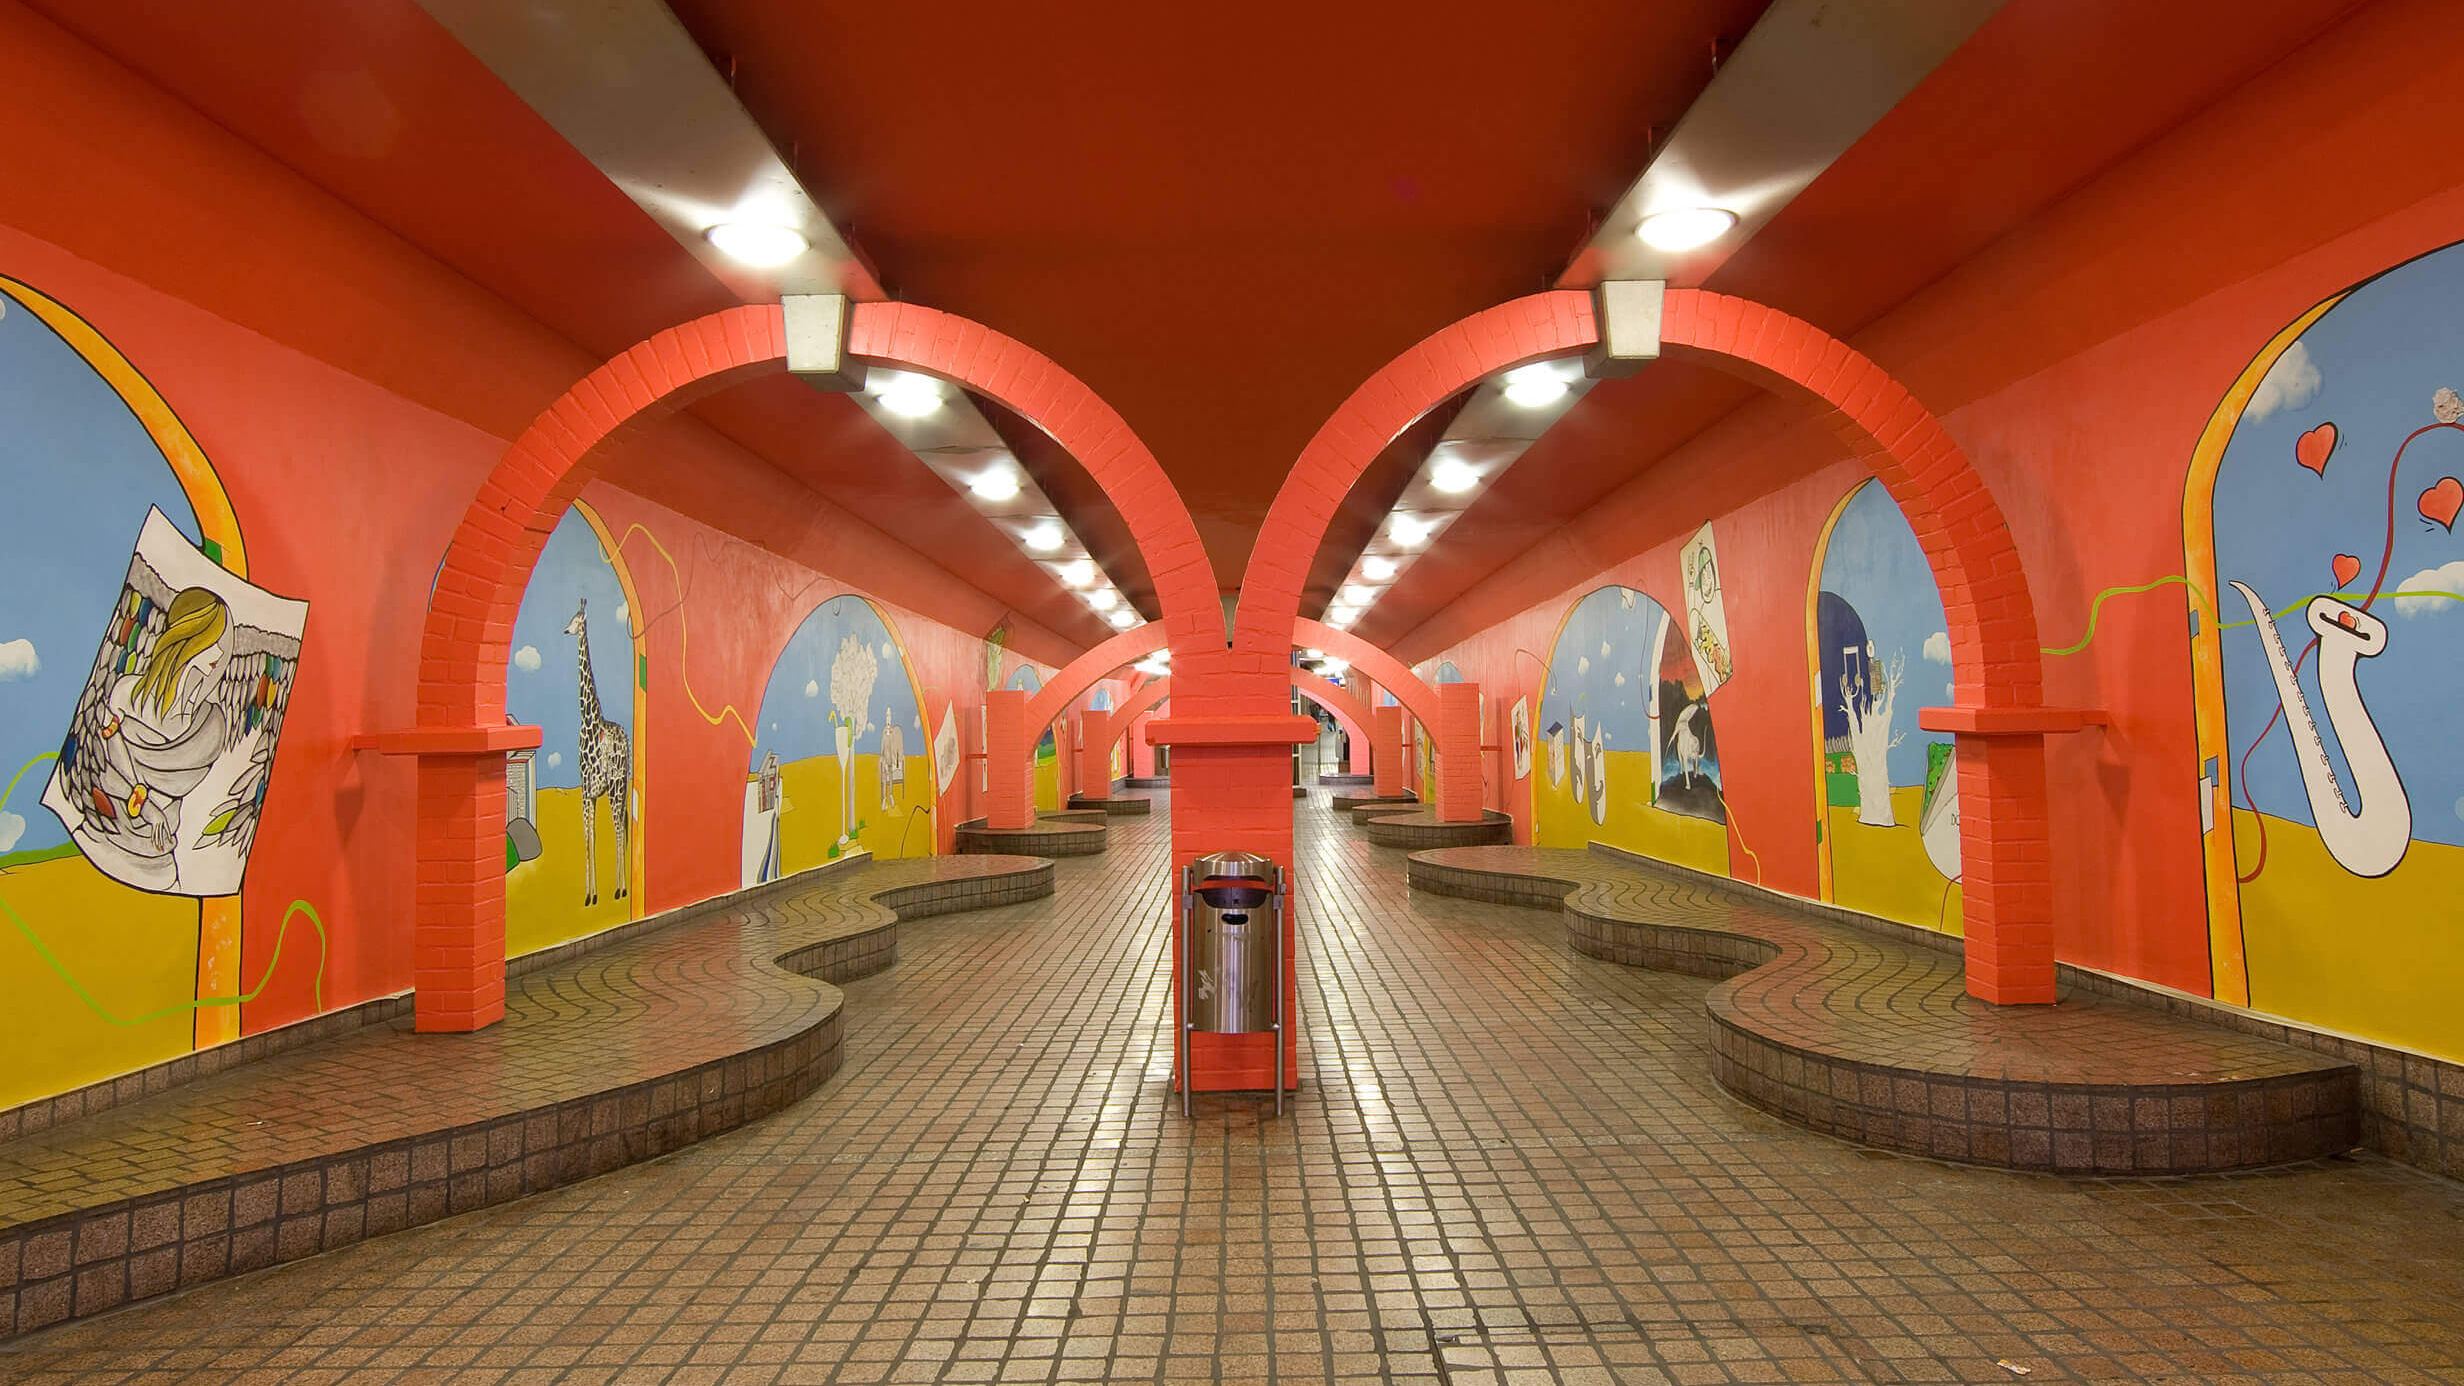 Die Gänge in der Essener U-Bahn Station Viehofer Platz, die leuchtend orange und mit Tieren bemalt sind.